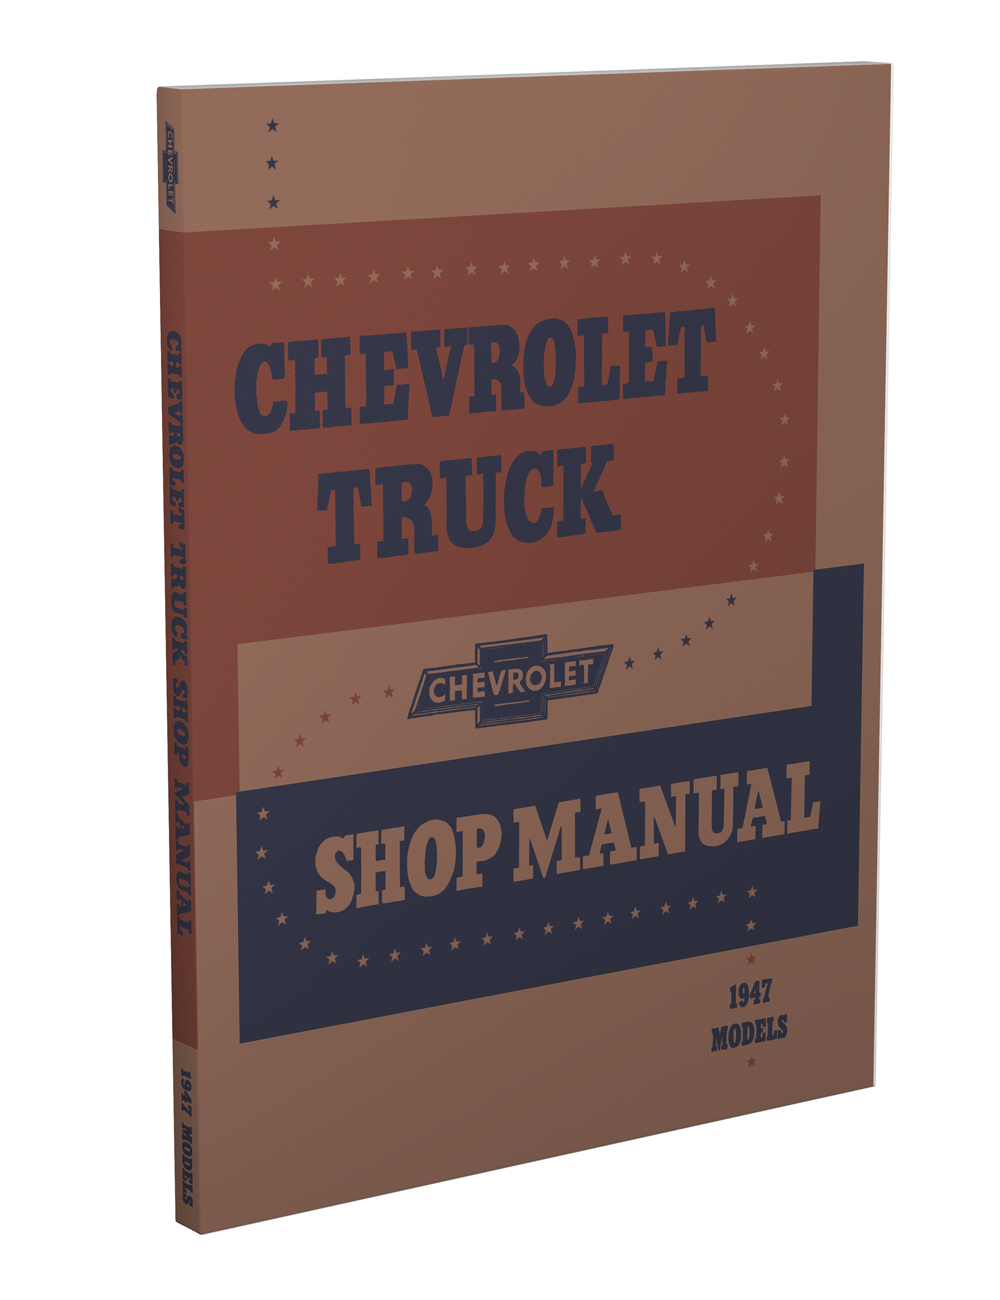 1947 Chevrolet Truck Shop Manual Reprint All models